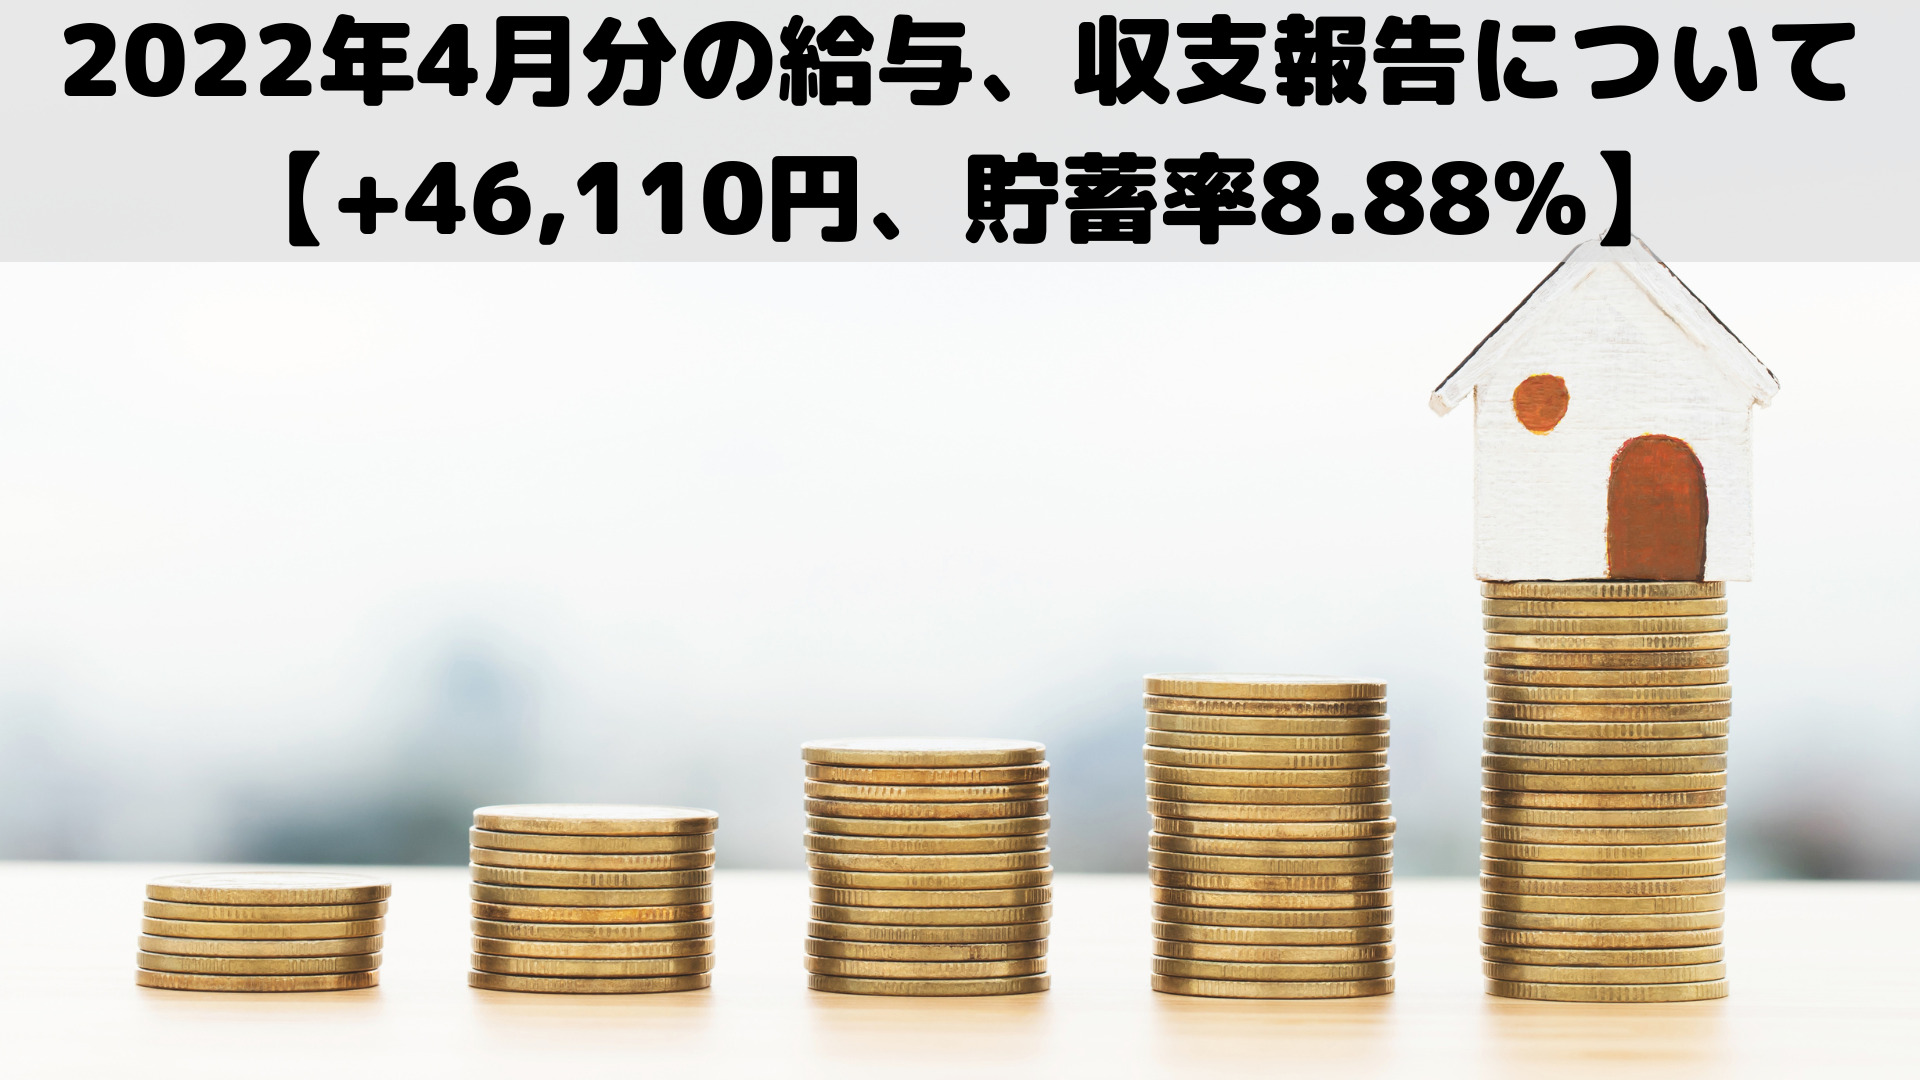 2022年4月分の給与、収支報告について【+46,110円、貯蓄率8.88%】